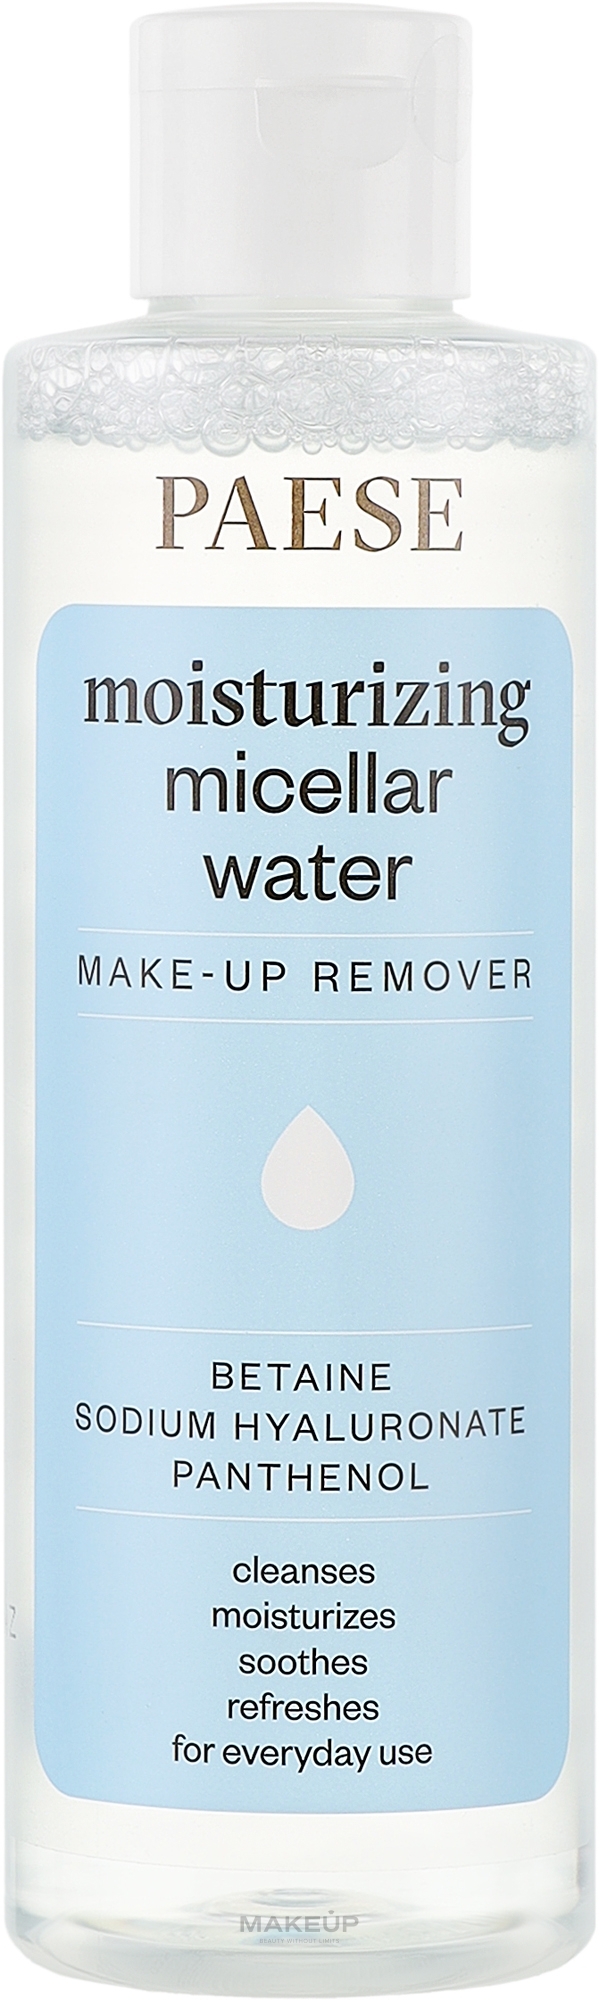 Зволожувальна міцелярна вода для очищення обличчя та зняття макіяжу - Paese Moisturizing Micellar Water — фото 200ml